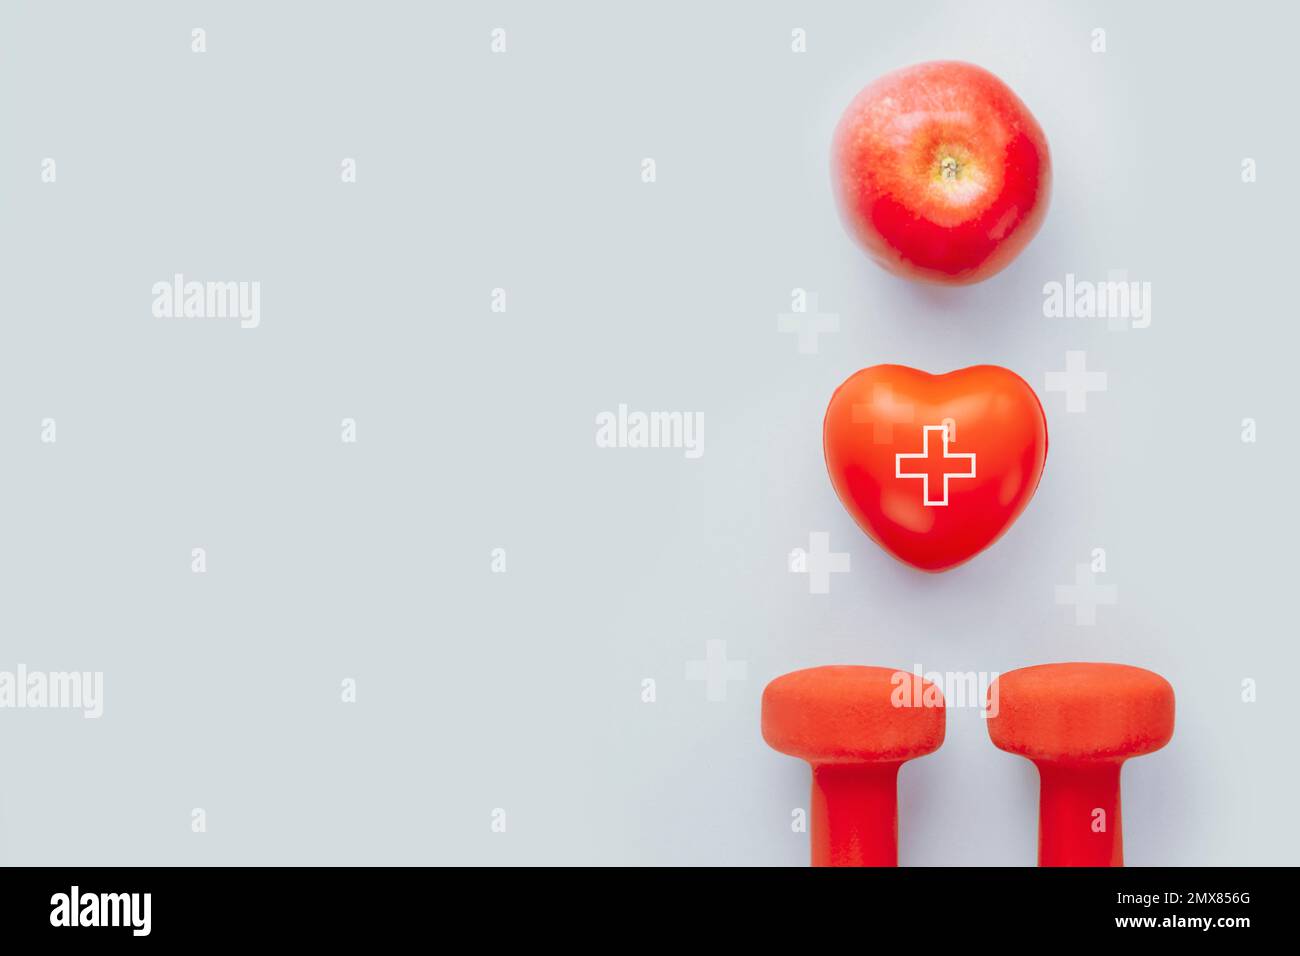 Mit rotem Herz Formen Sie den Hand-Übungsball, den Apfel und die Kurzhanteln auf blauem Hintergrund. Gesundheit, gesunde Ernährung und Sportkonzept, Weltherztag. Flachla Stockfoto